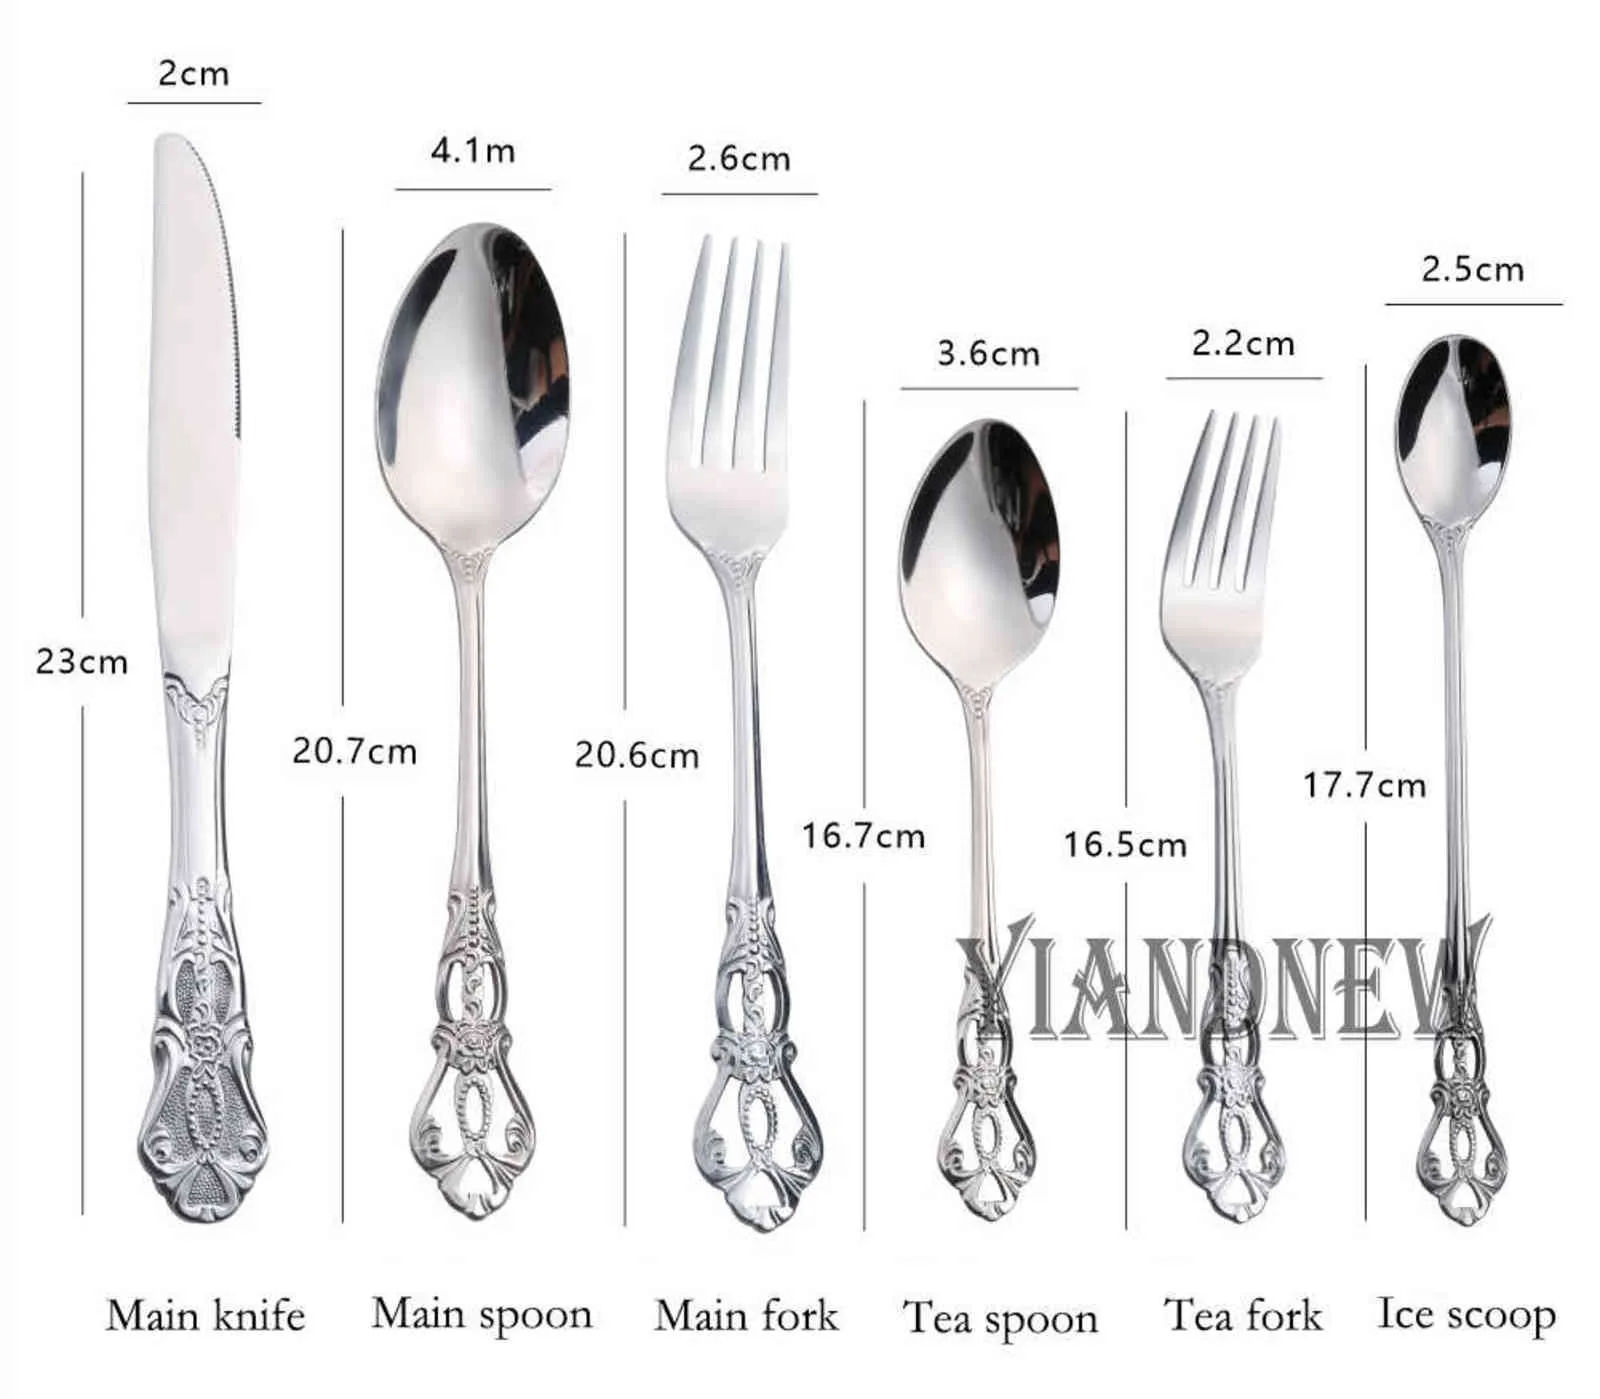 Royal Cutlery Set Gold Stainless Steel Dinnerware Western Knives Tea Spoon Forks Kitchen Dinner Silverware Tableware 211112